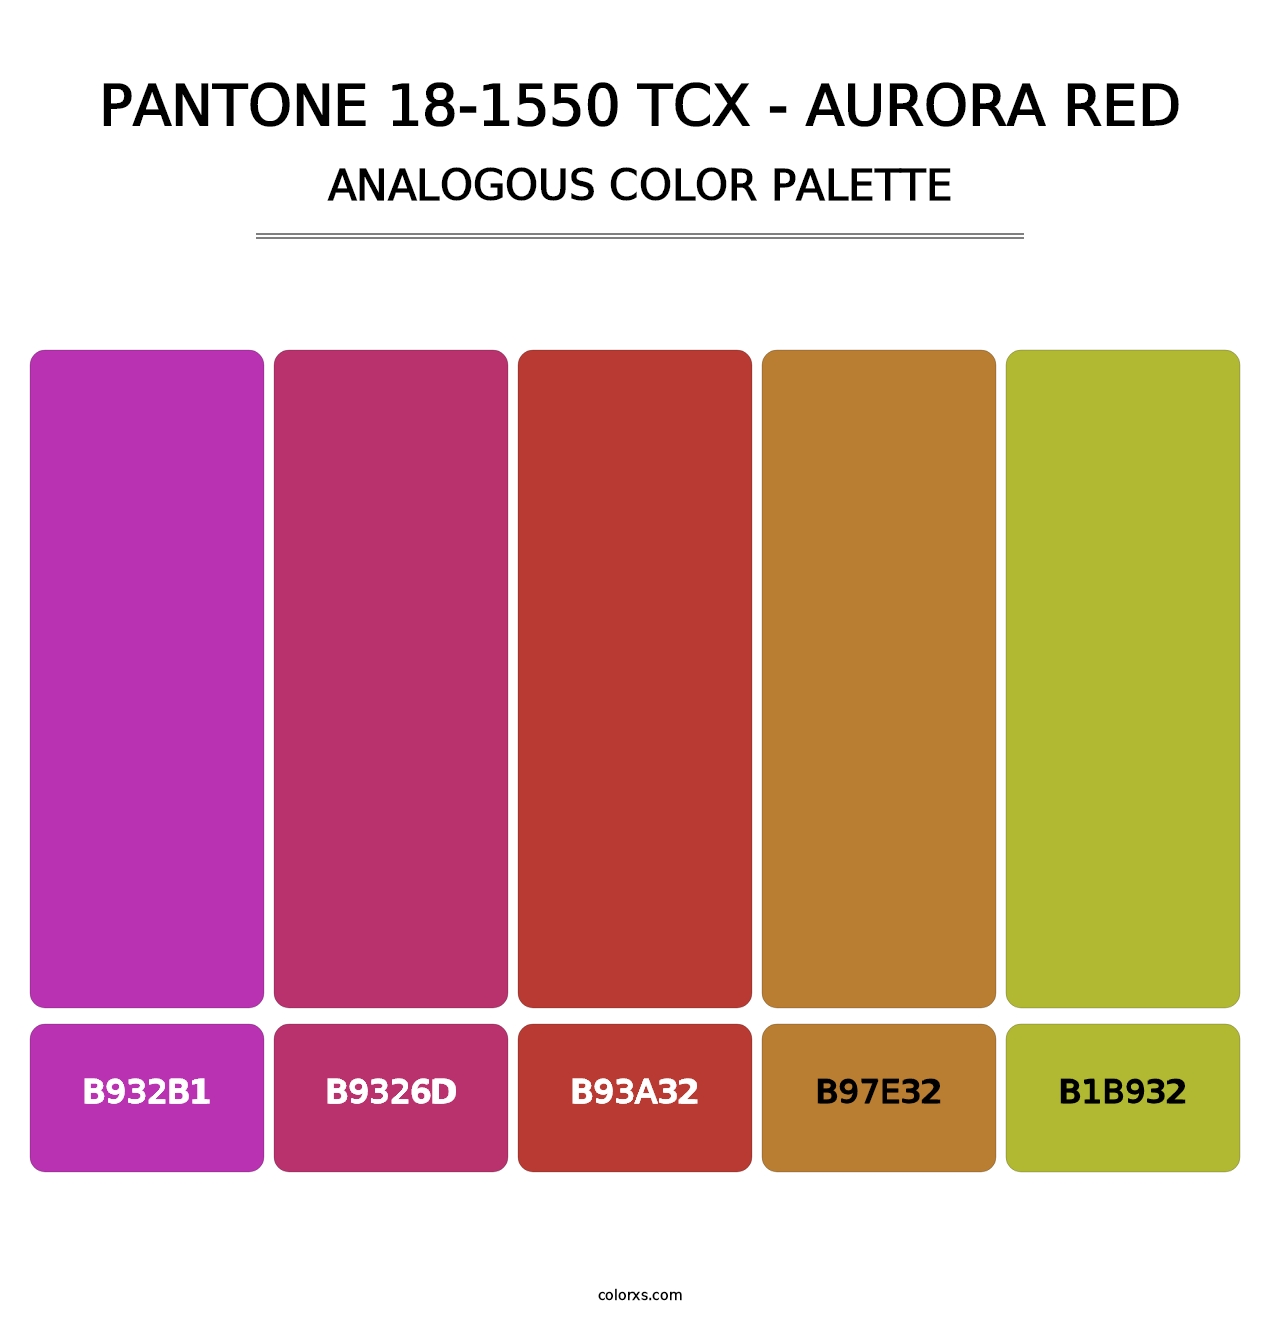 PANTONE 18-1550 TCX - Aurora Red - Analogous Color Palette